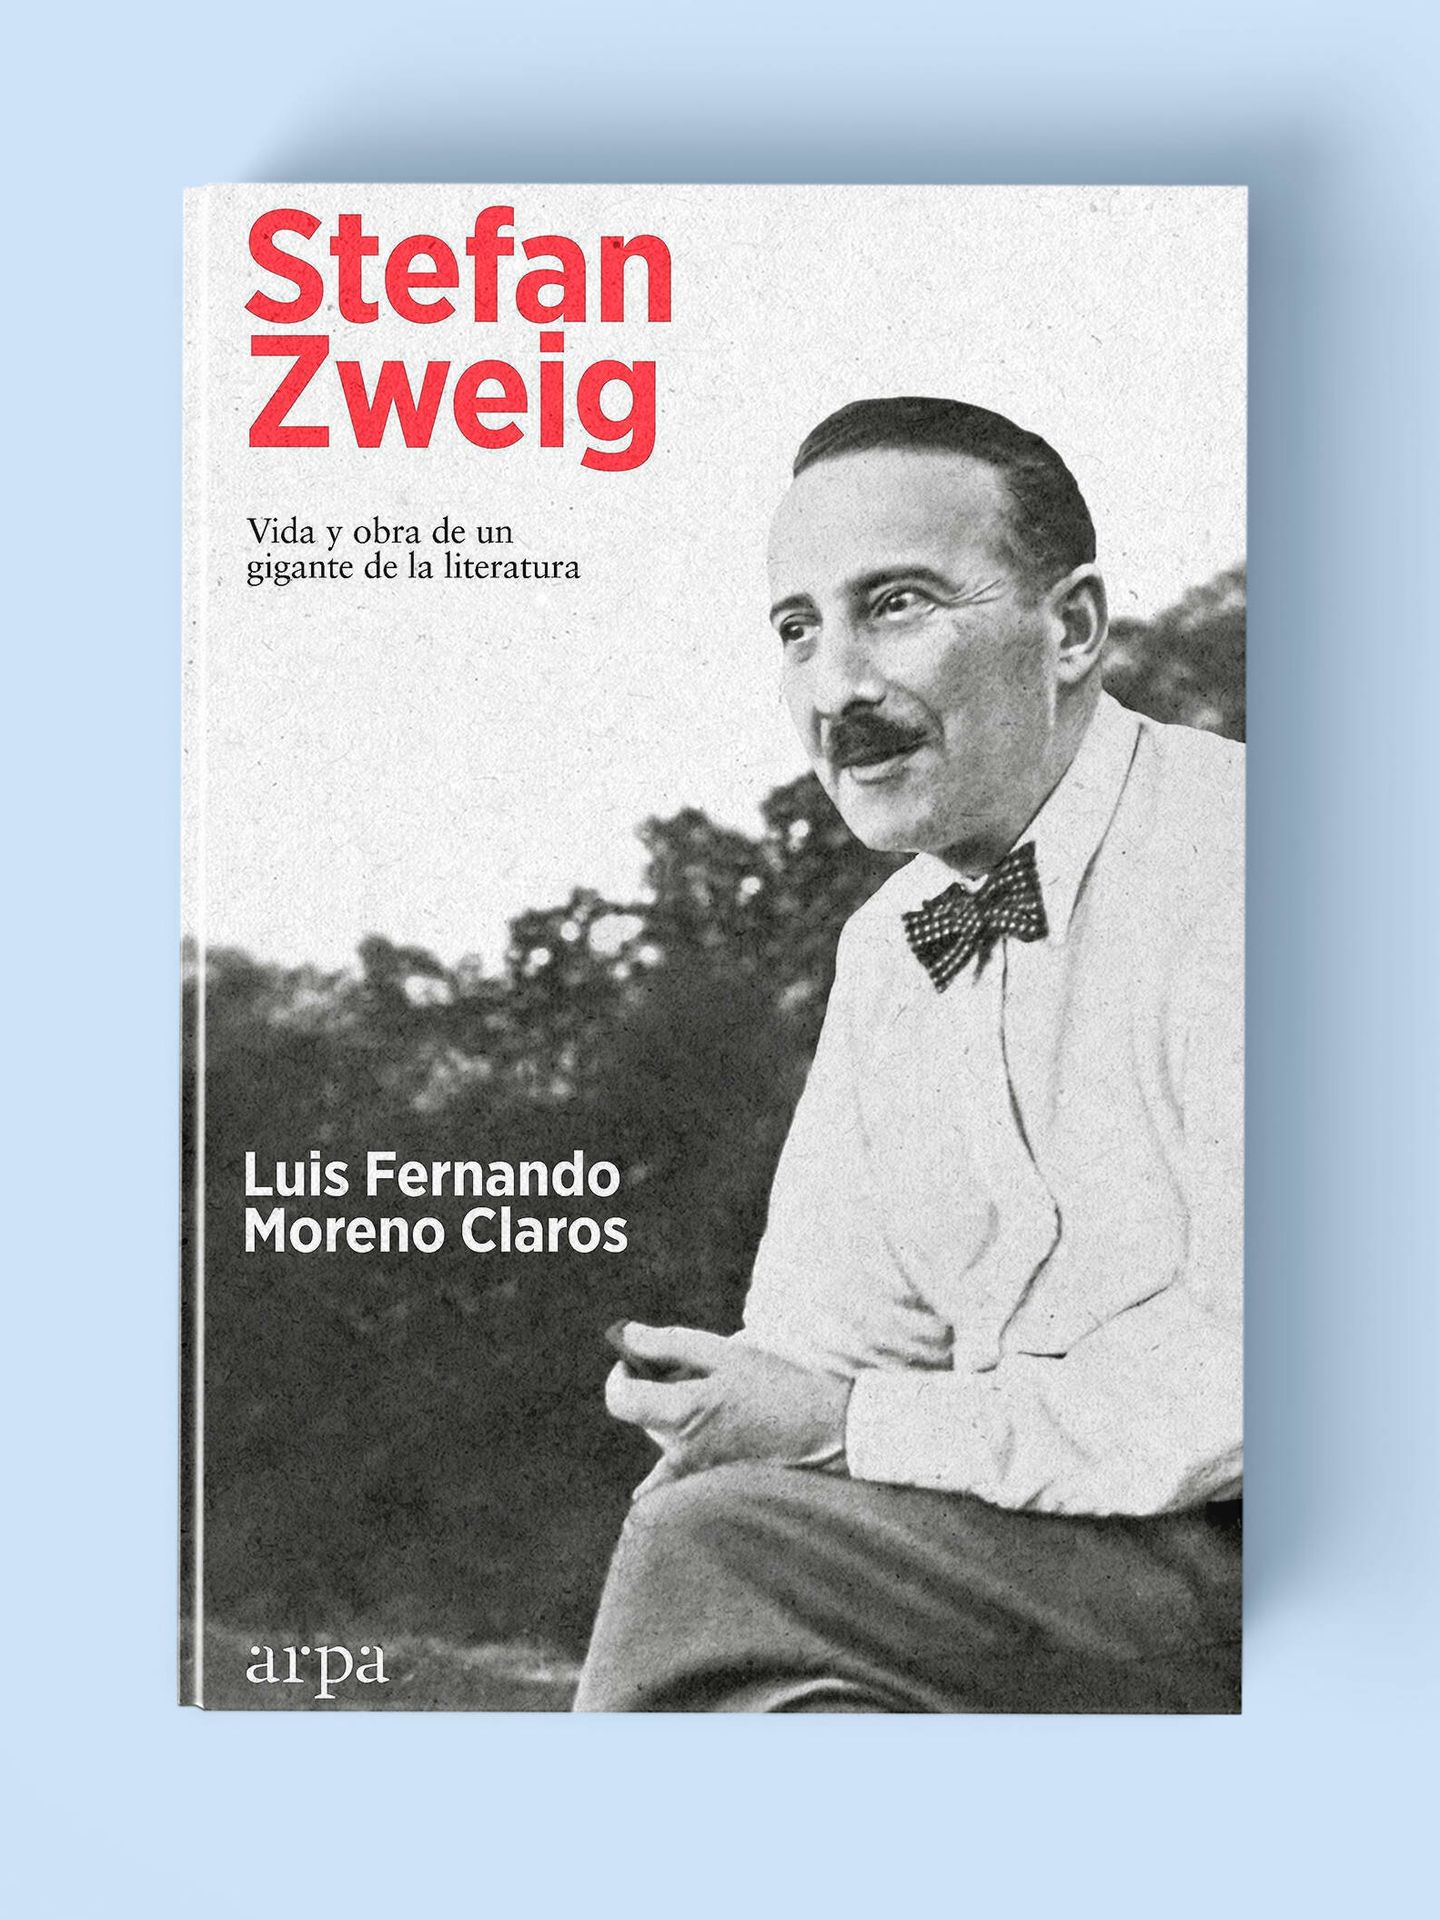 Portada de 'Stefan Zweig: vida y obra de un gigante de la literatura', de Luis Fernando Moreno Claros. 